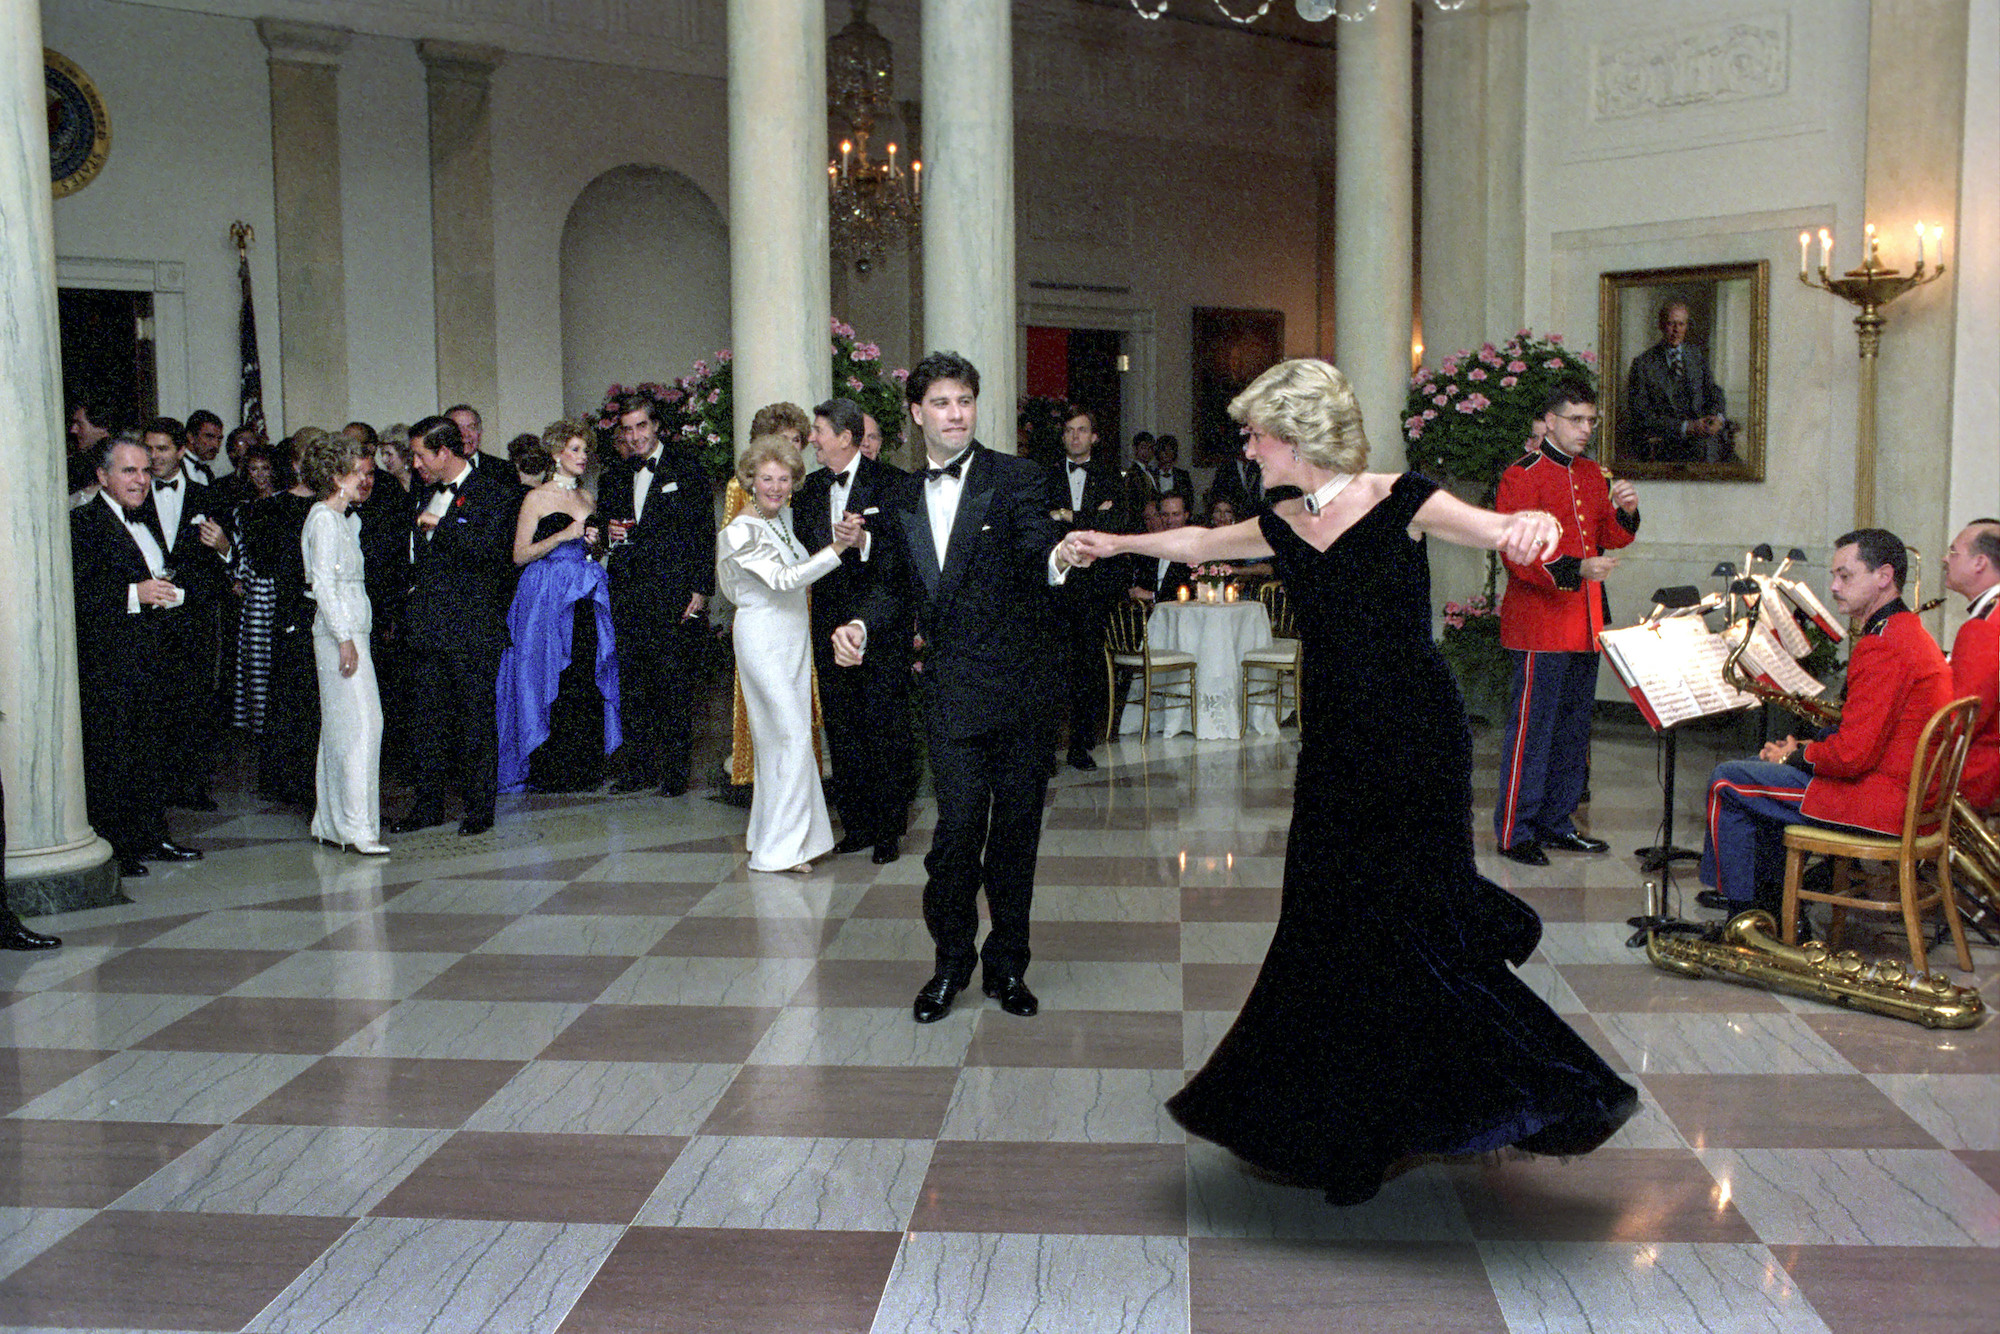 John Travolta and Princess Diana dancing